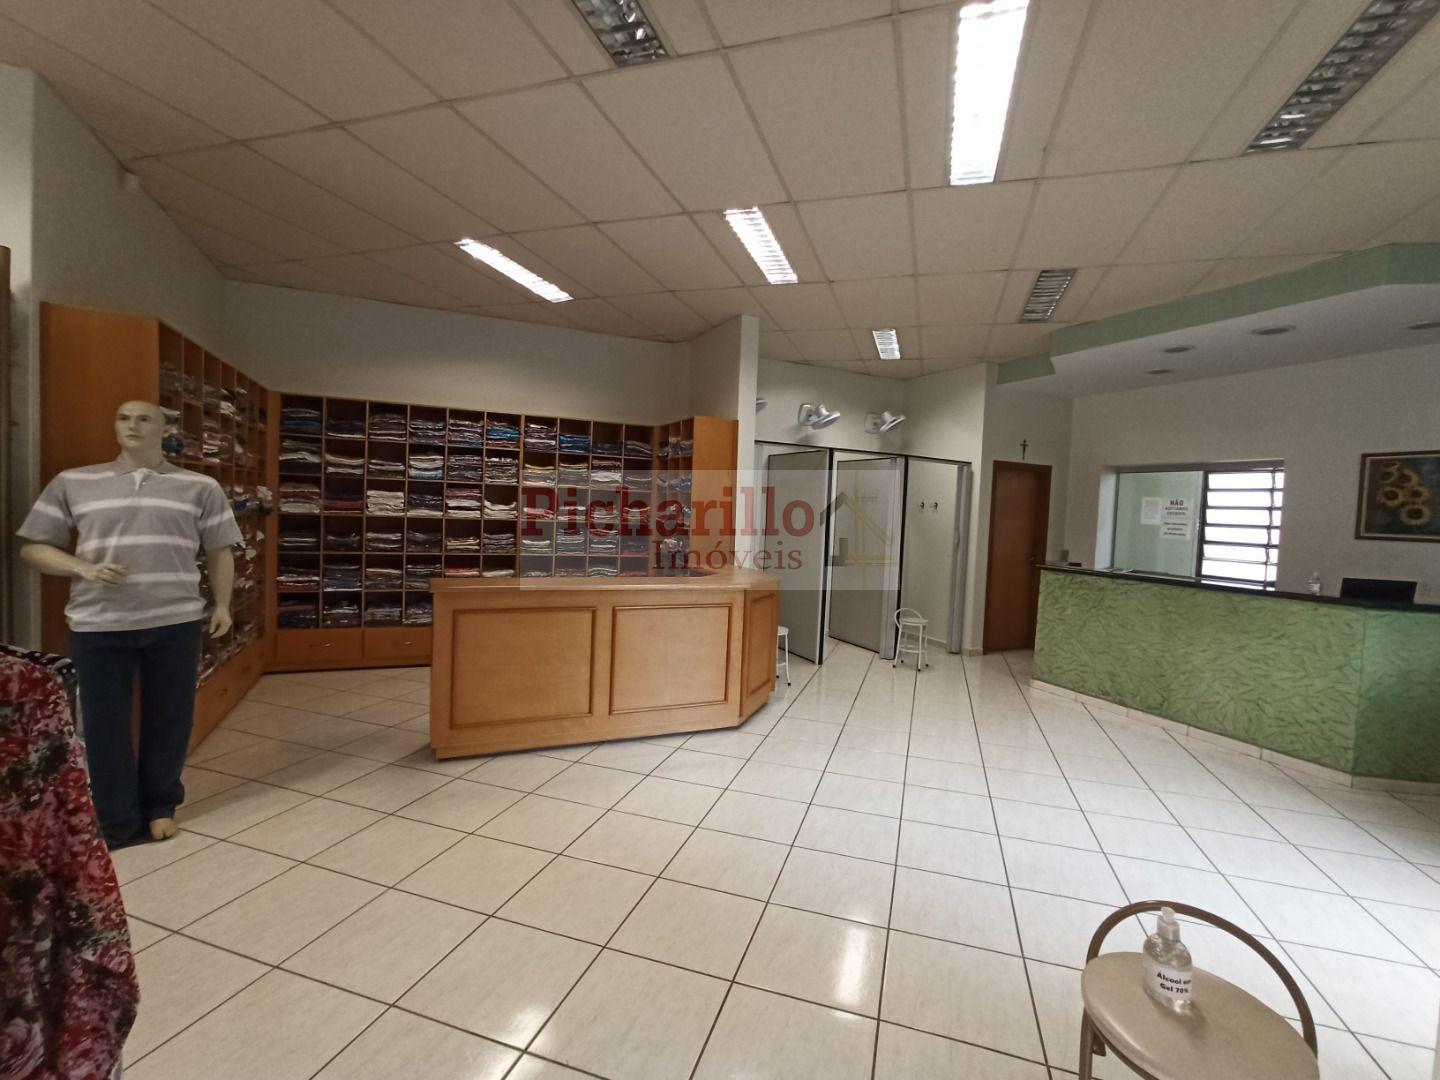 Salão à venda, 247 m² por R$ 900.000 - Centro - São Carlos/SP